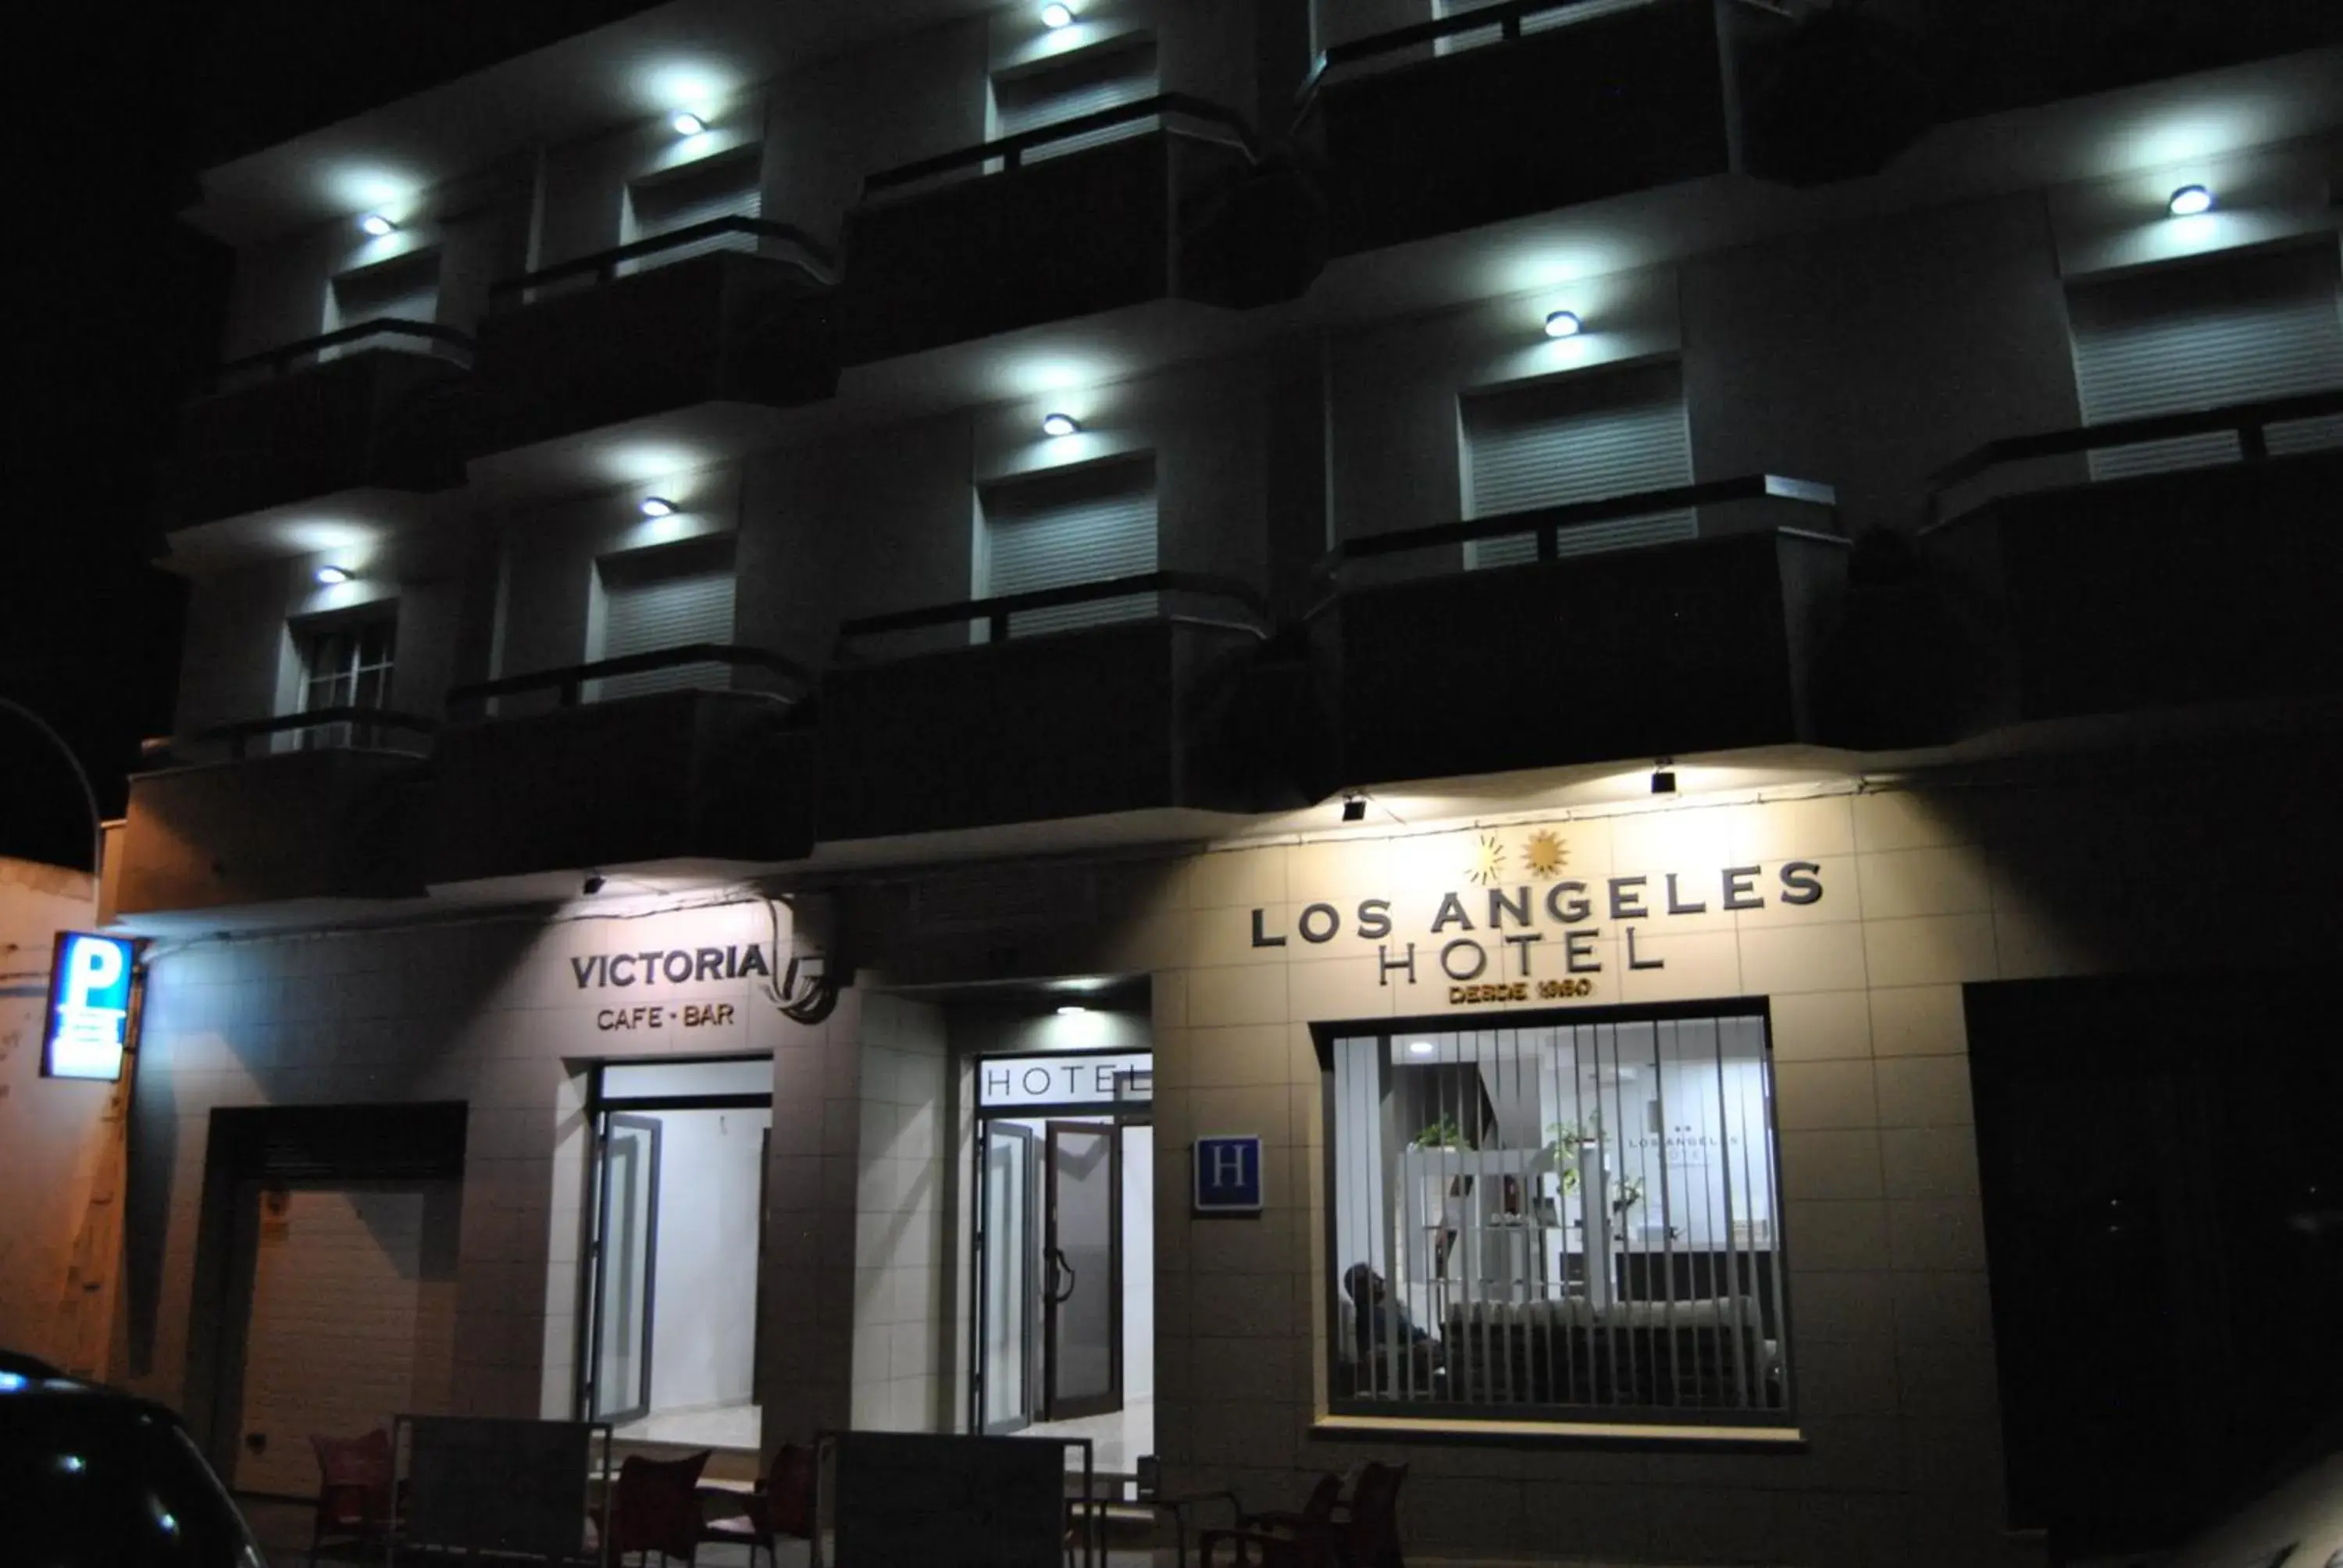 Property building, Facade/Entrance in Hotel Los Angeles